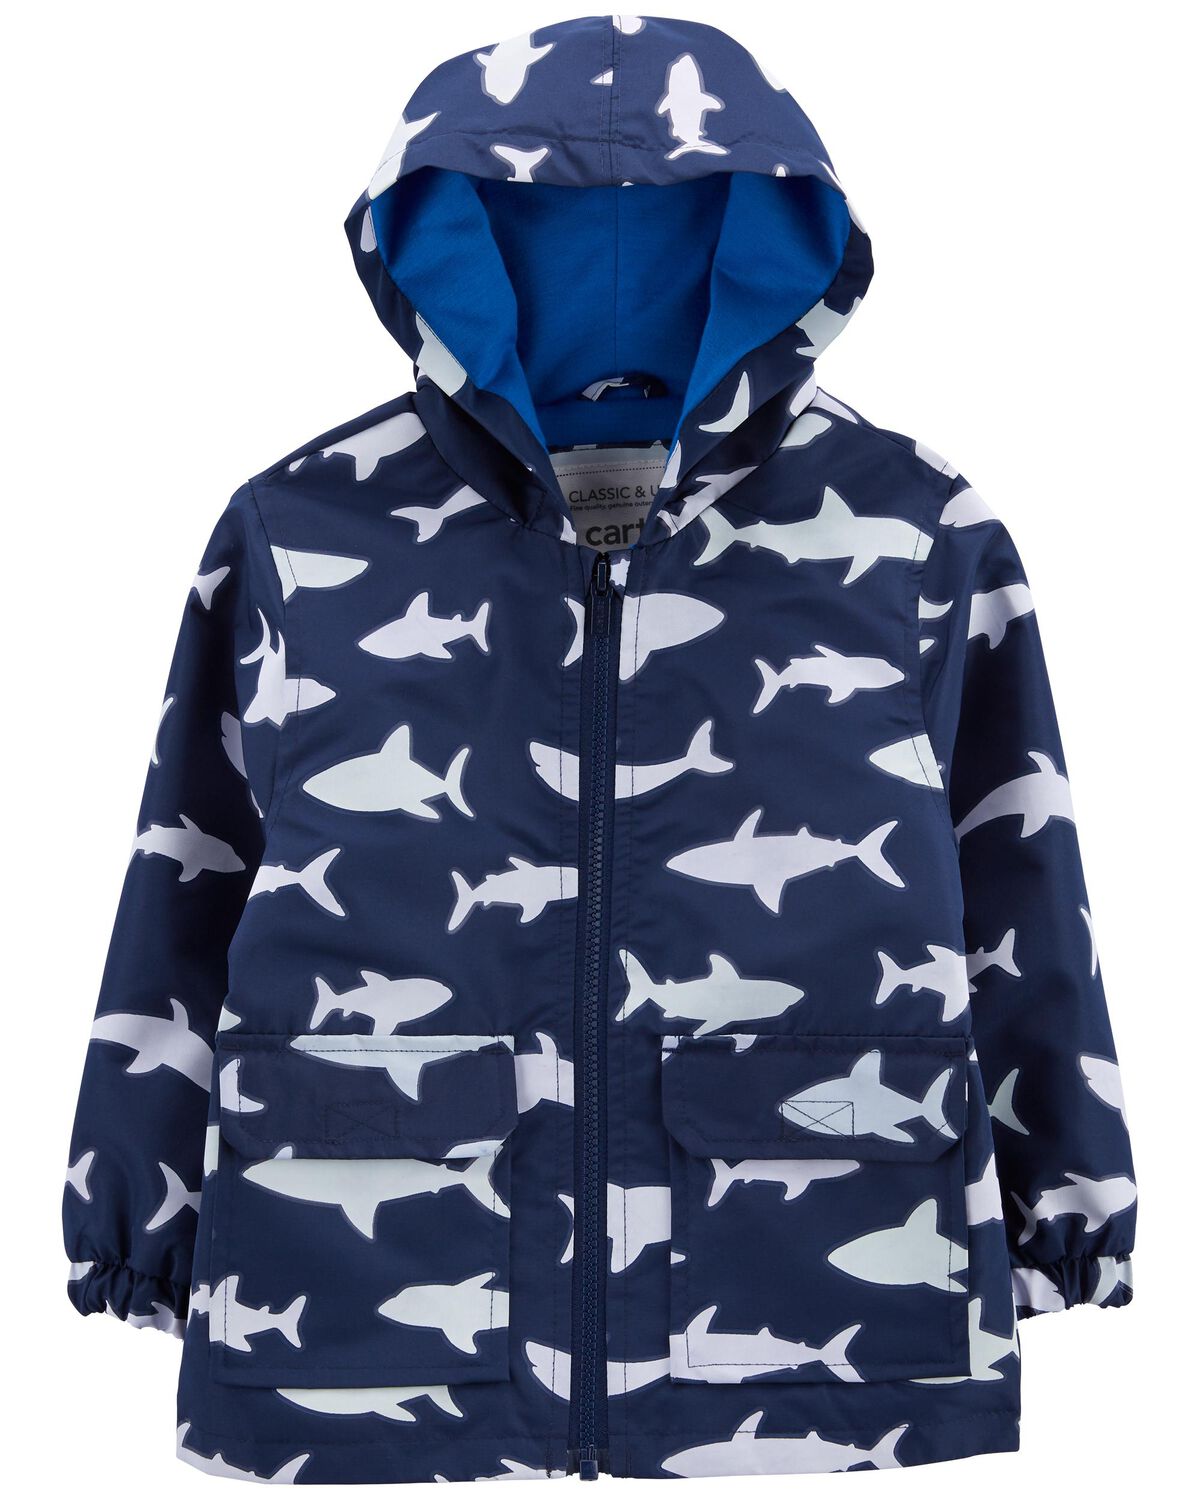 Toddler Shark Color-Changing Rain Jacket